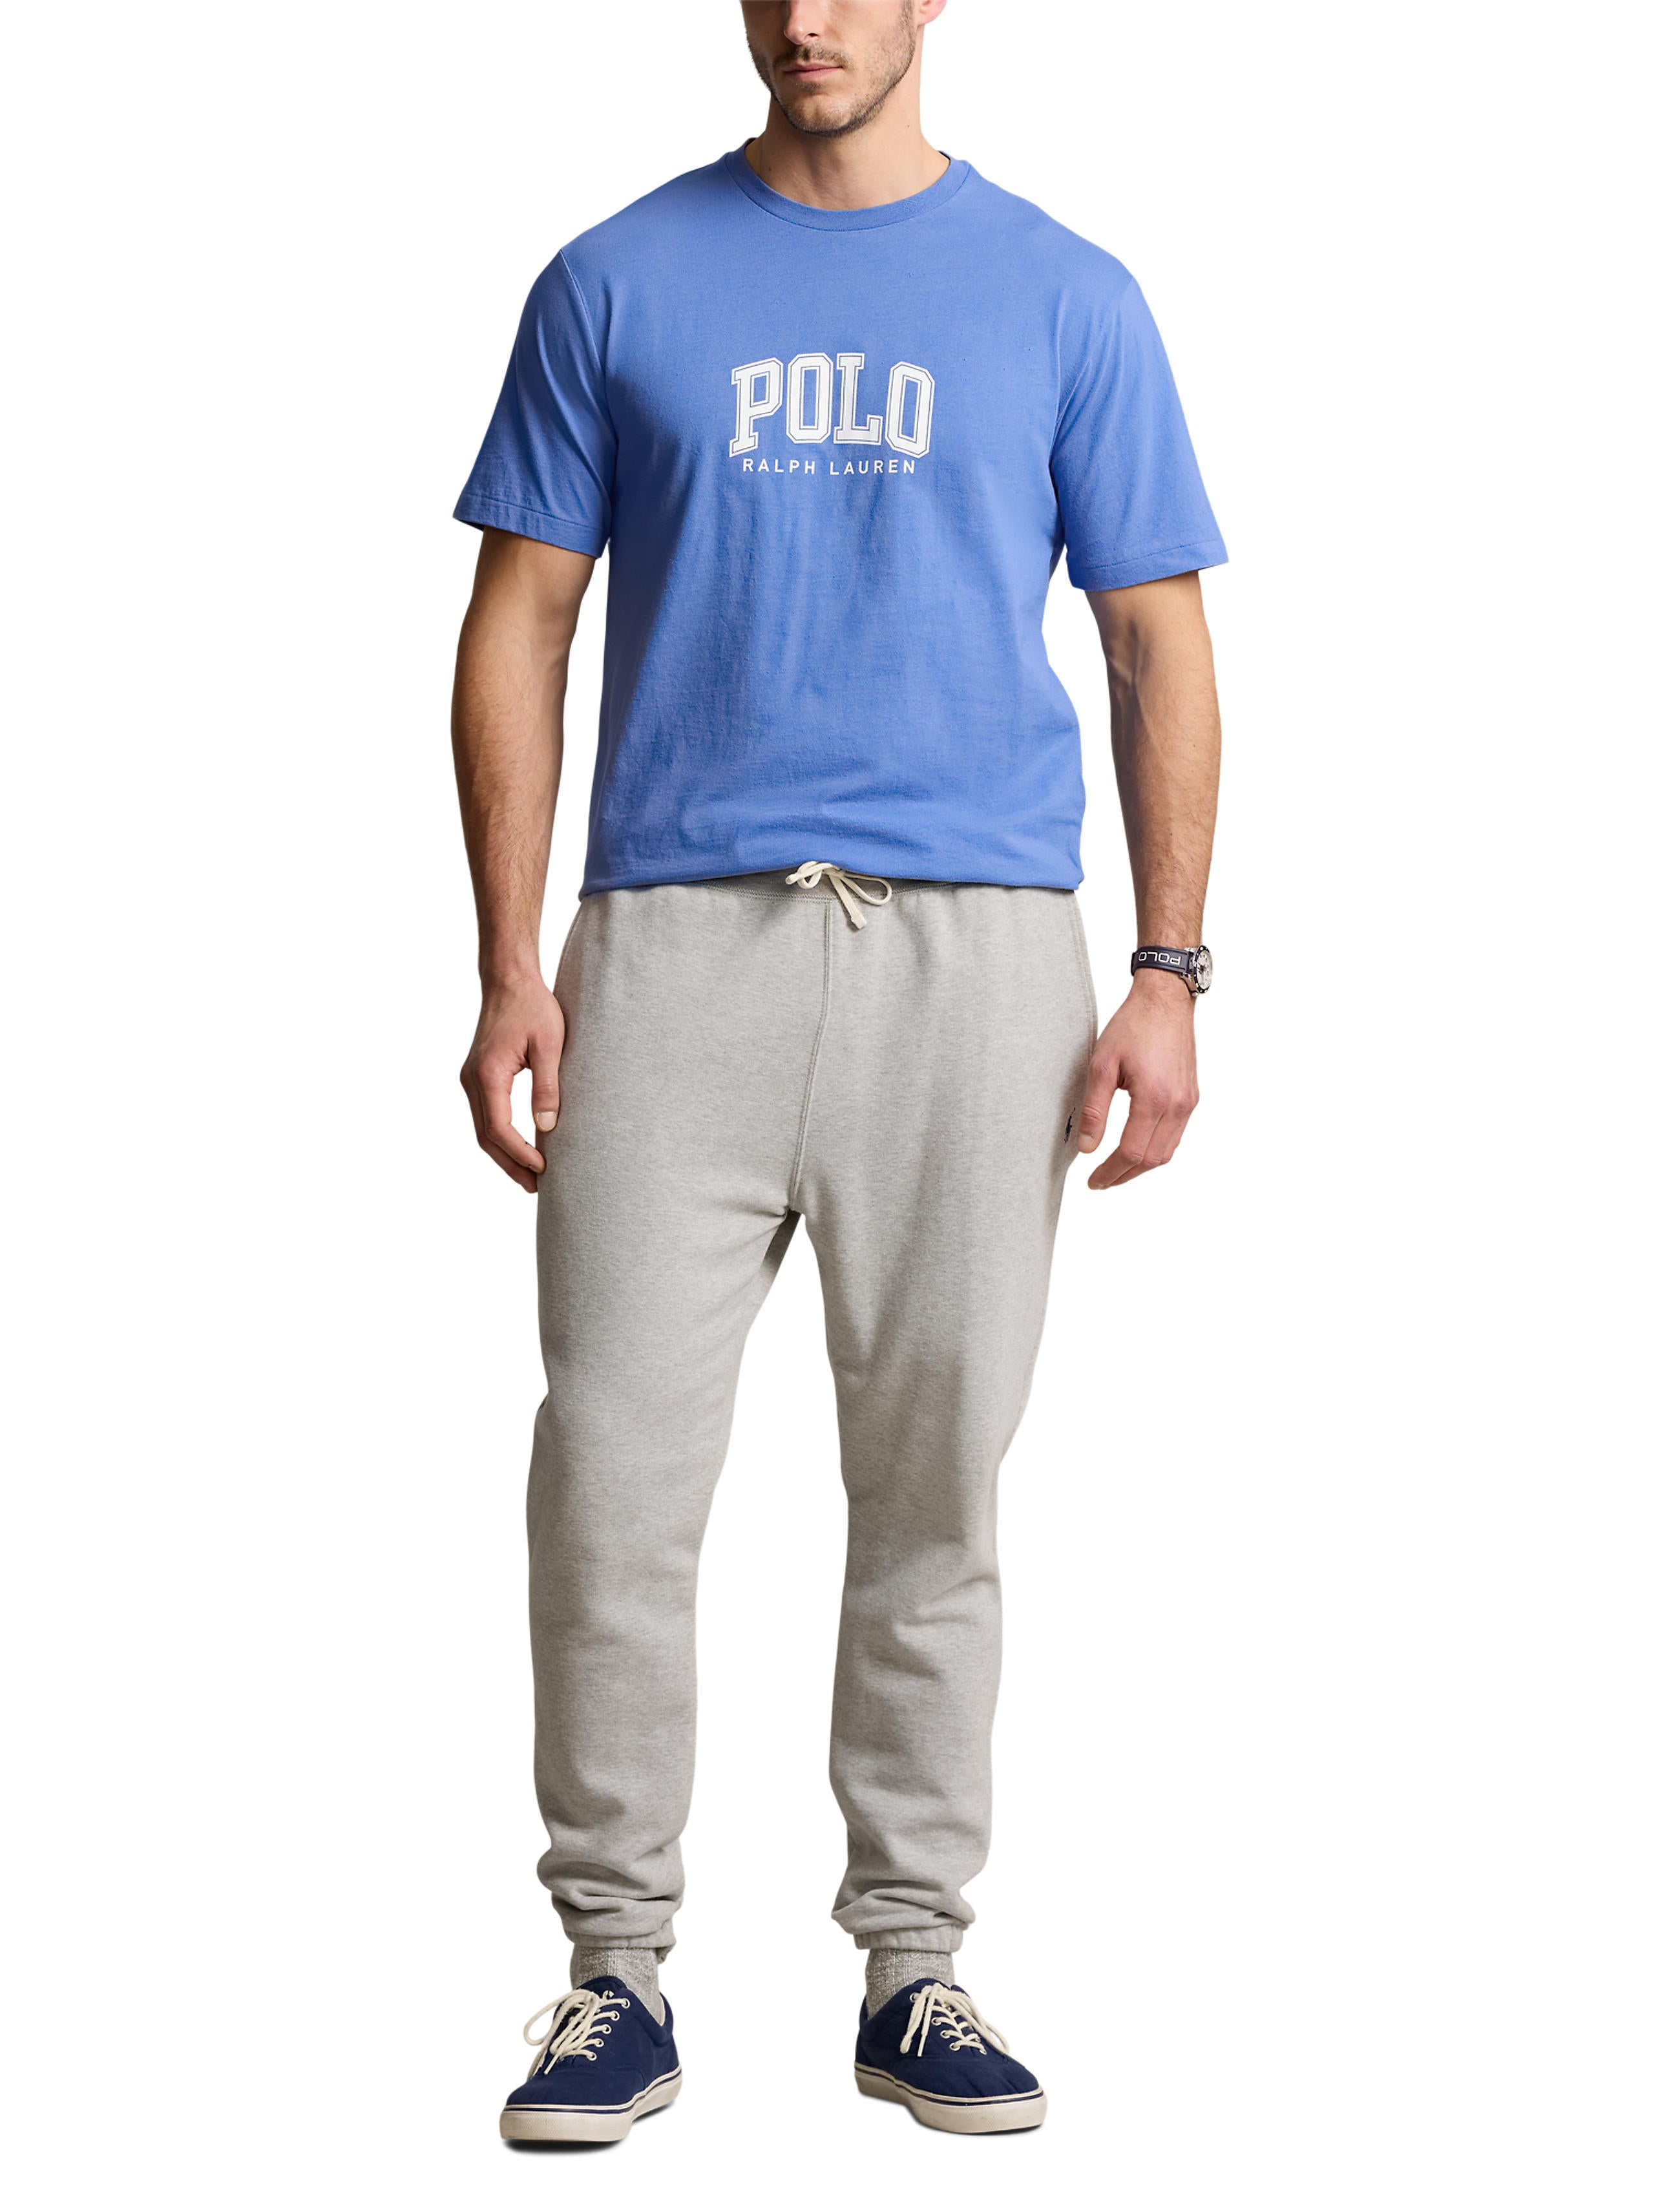 Polo Ralph Lauren Big & Tall Classics Tee Shirt